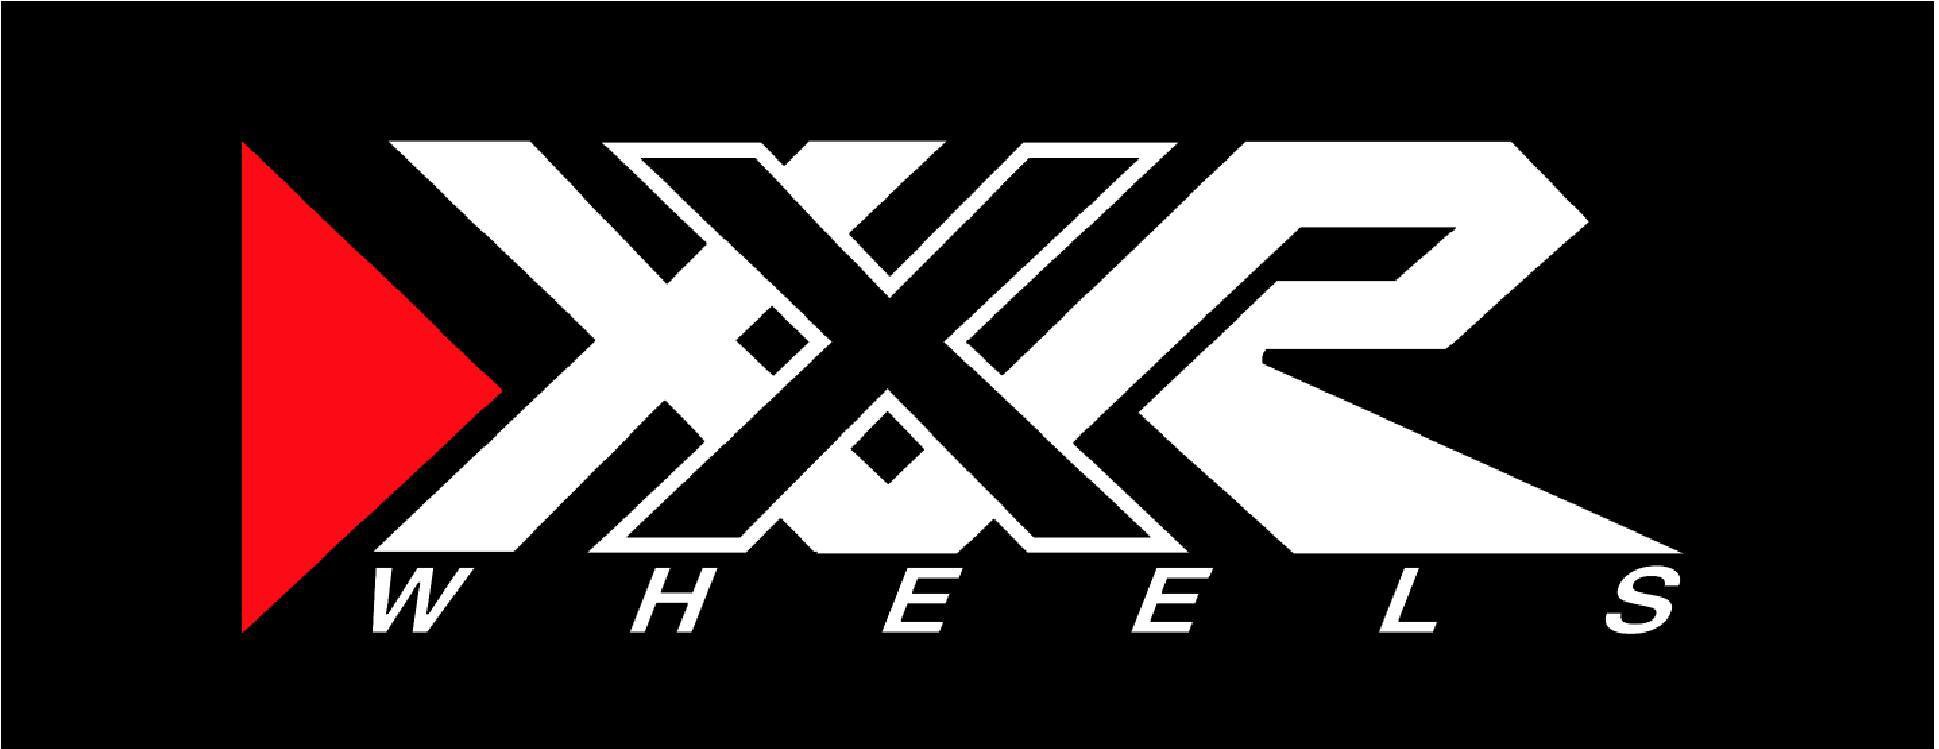 xxr-wheels logo